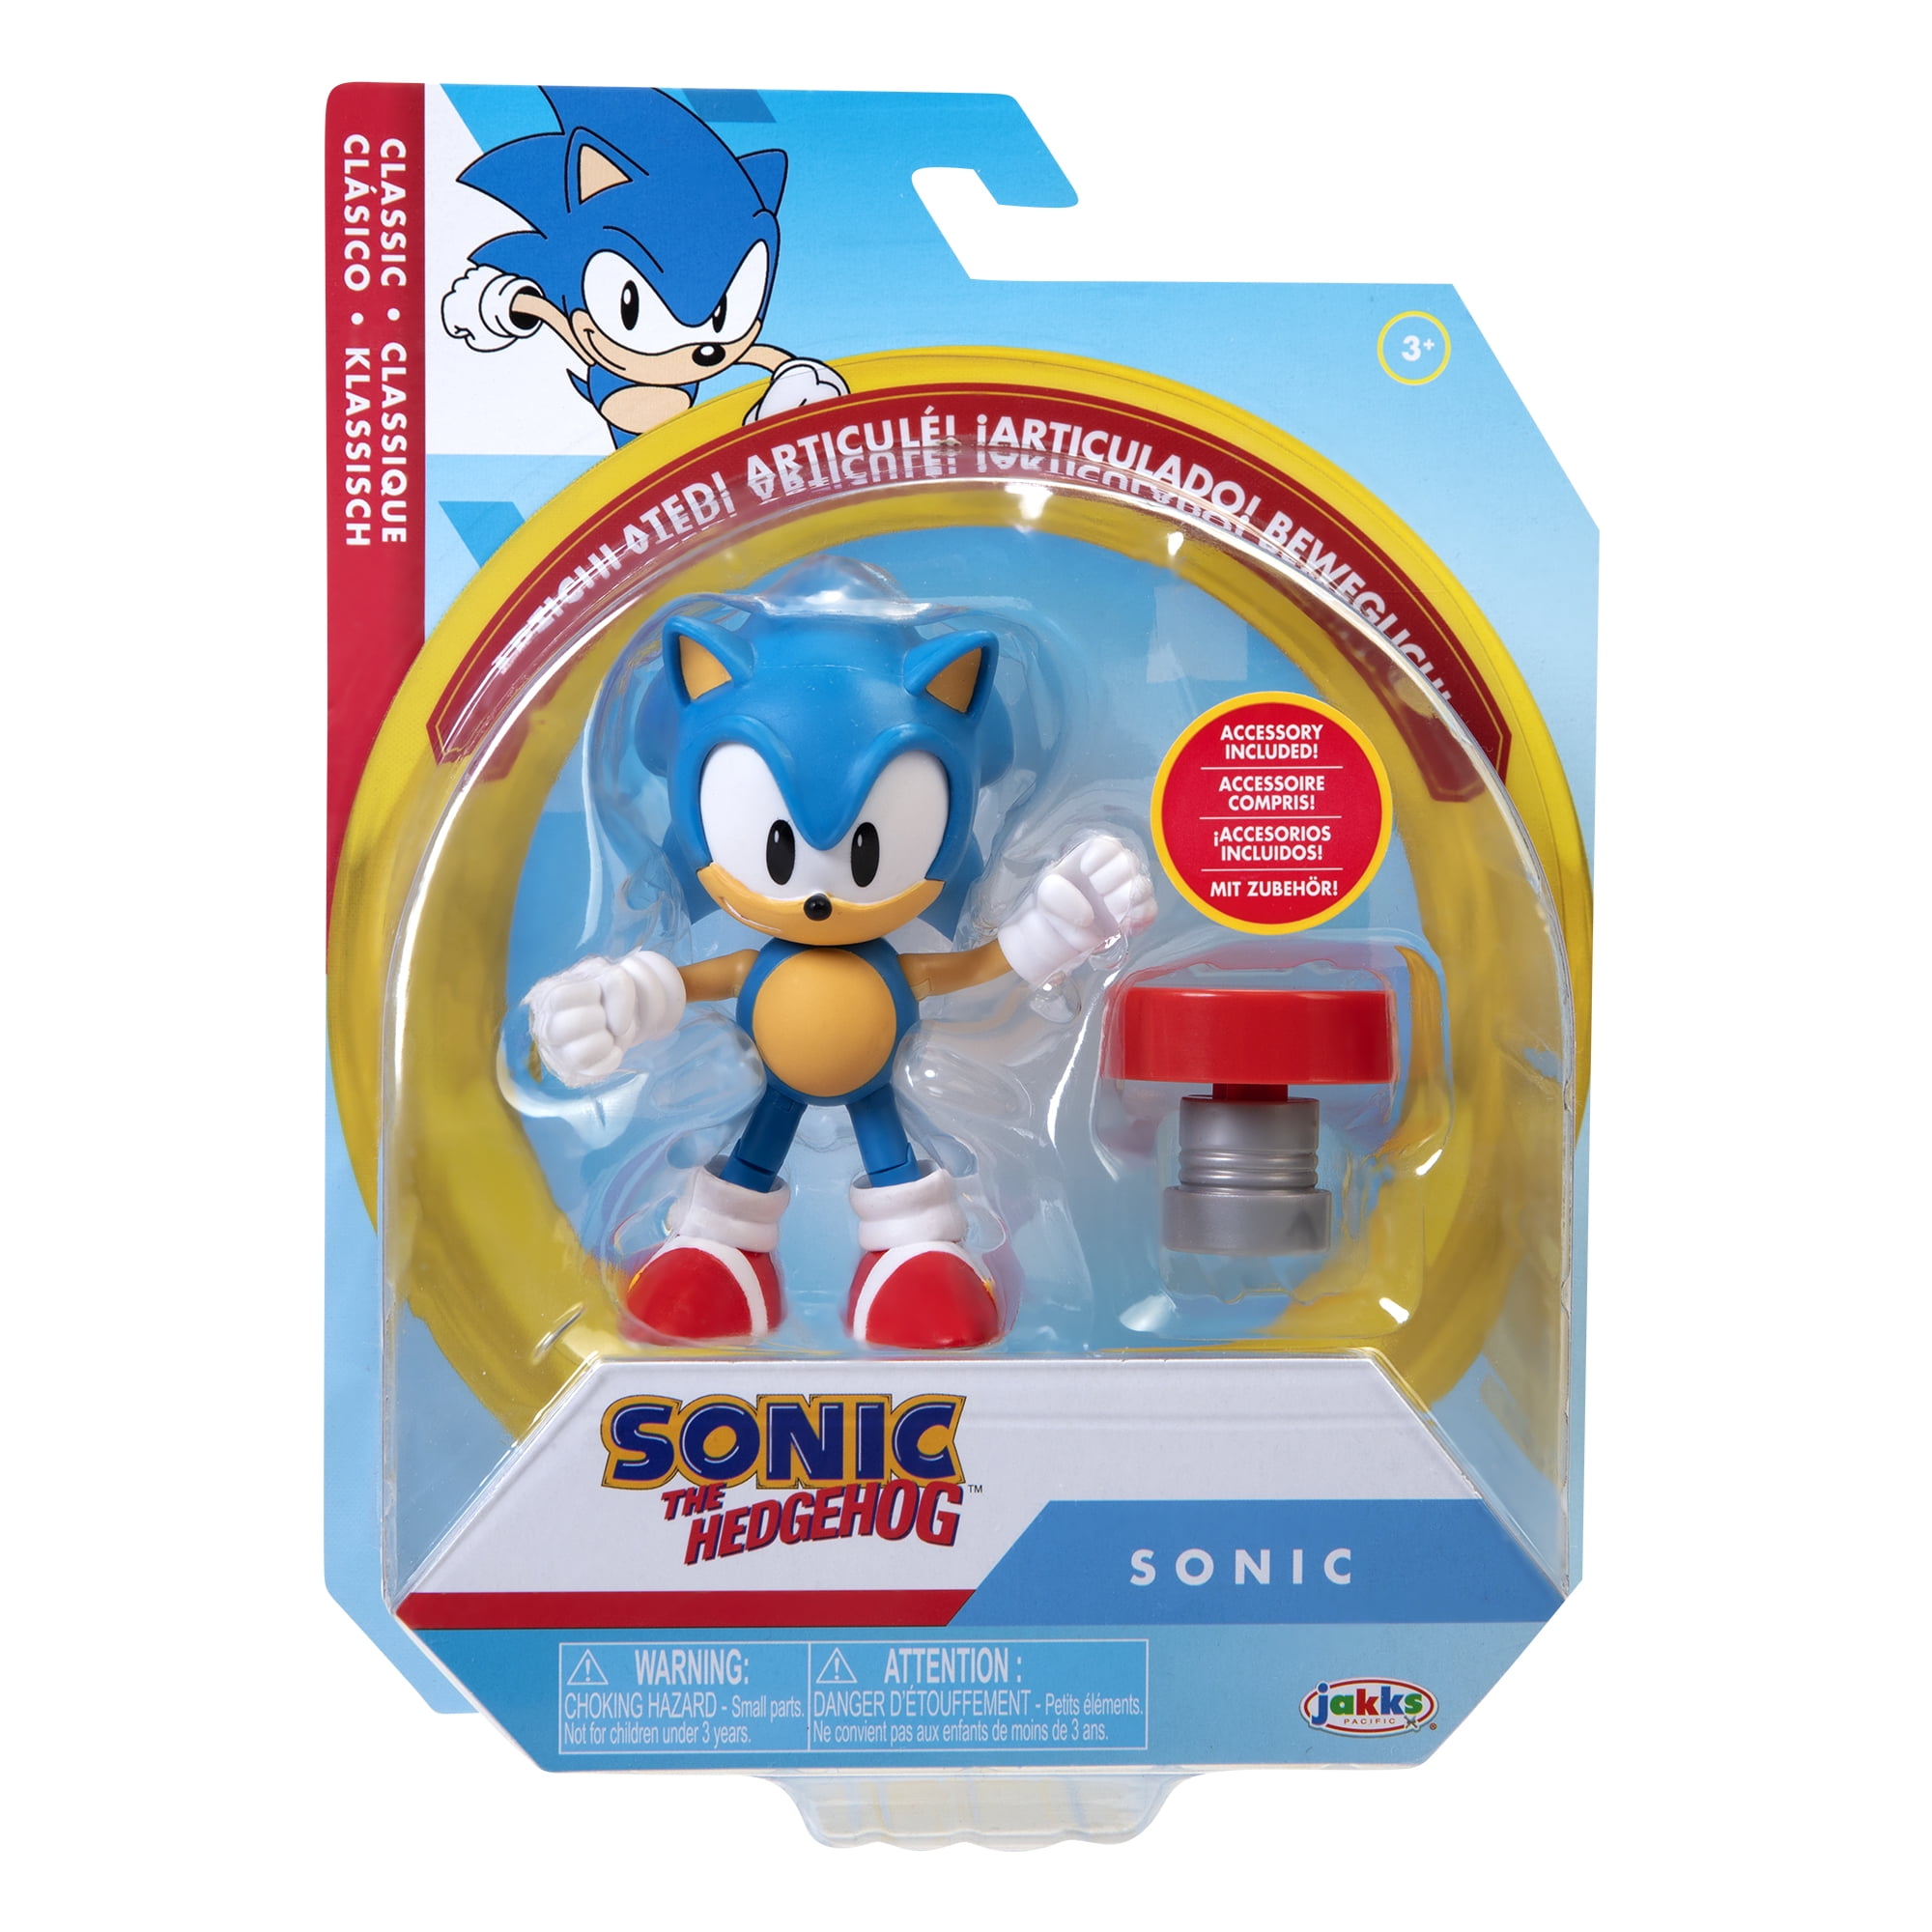 lekken Geneigd zijn Productie Sonic the Hedgehog 4 inch Action Figure - Classic Sonic - Walmart.com